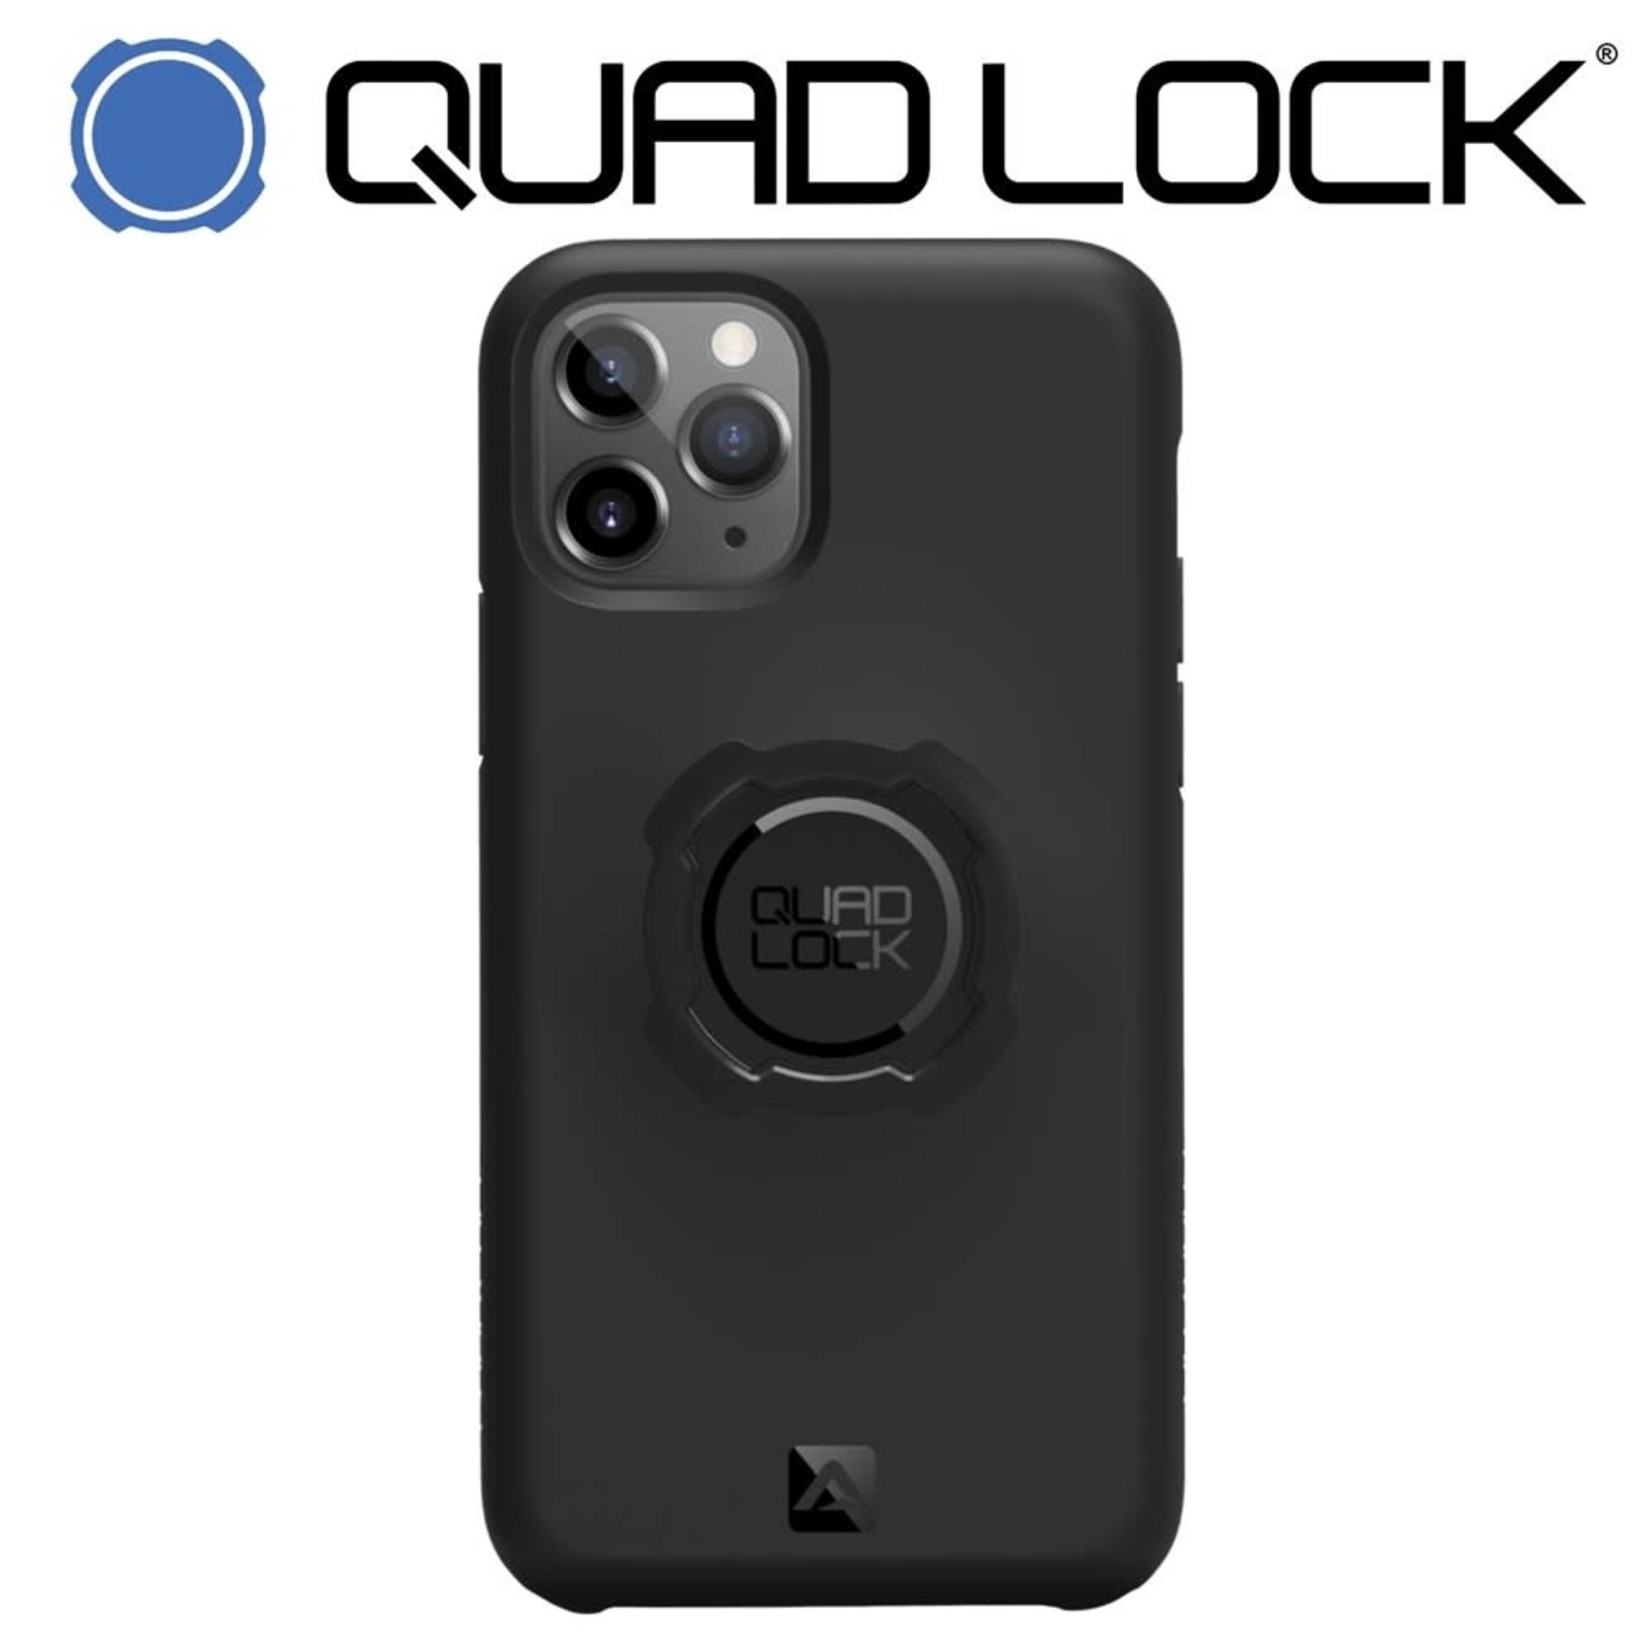 Quadlock QUAD LOCK CASE IPHONE 11 PRO